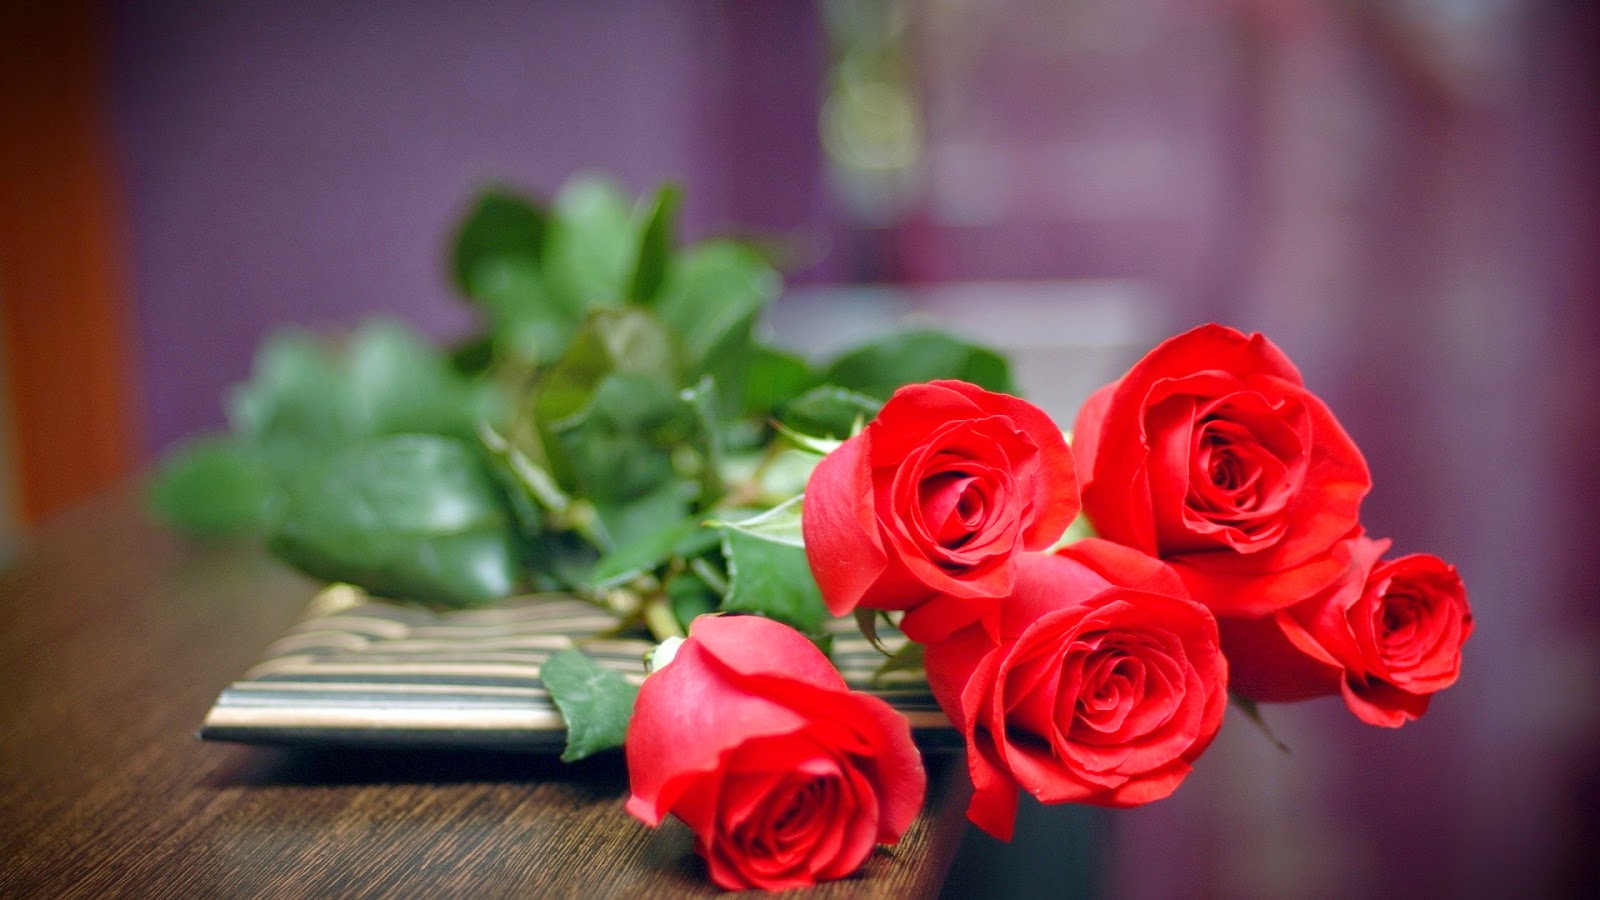 Những lời nhắn gửi yêu thương chứa đựng trong bó hoa tươi sinh nhật   Uflowers  Giao Hoa Chuyên Nghiệp  Nhiều mẫu hoa đẹp